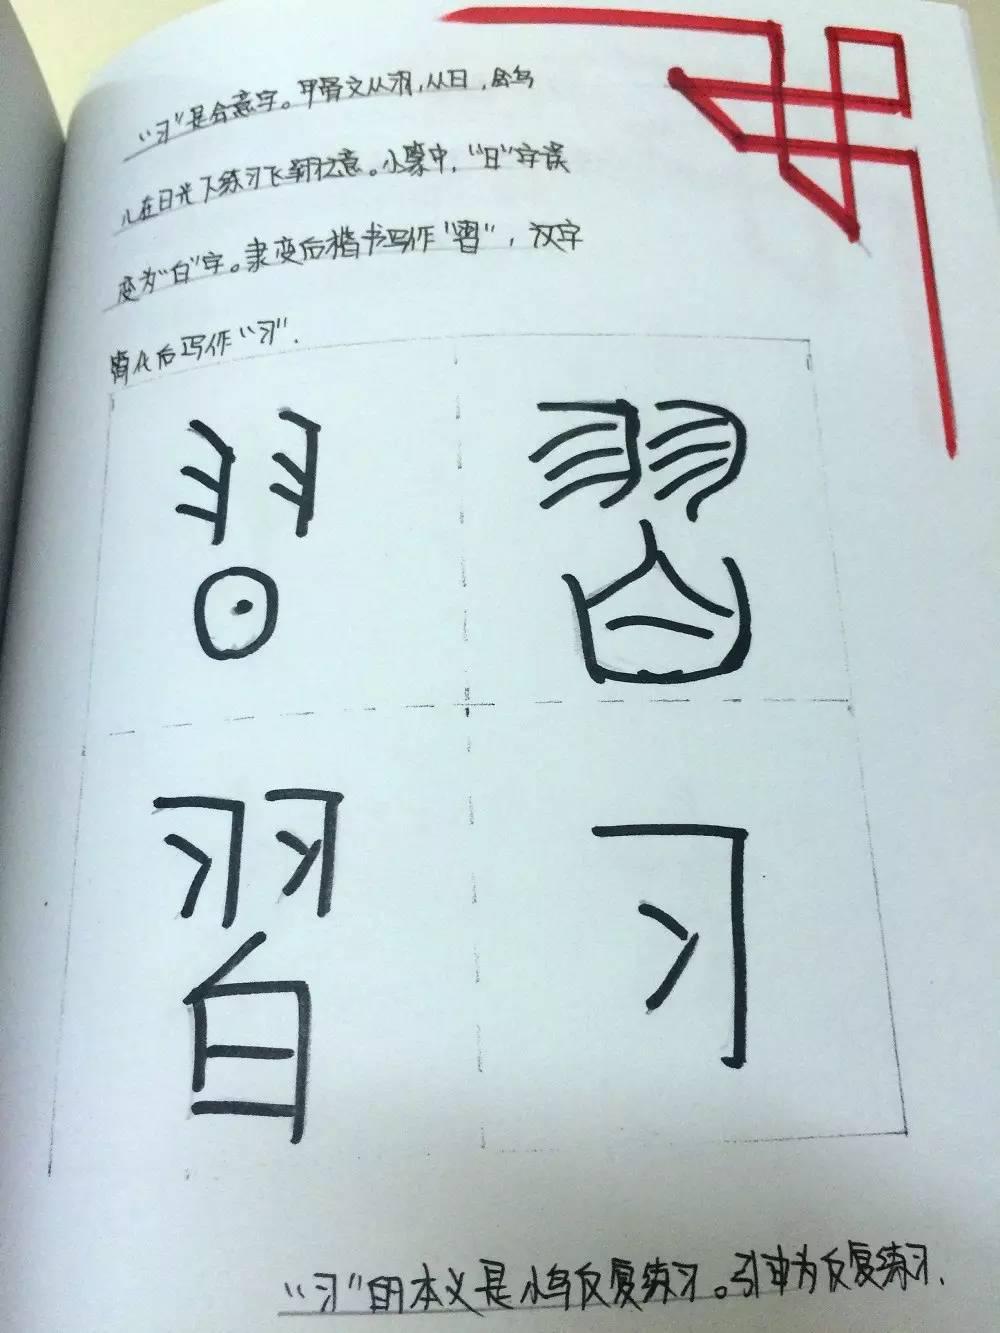 指尖下的汉字之美——国际部MYP最美中文作业图片_1023